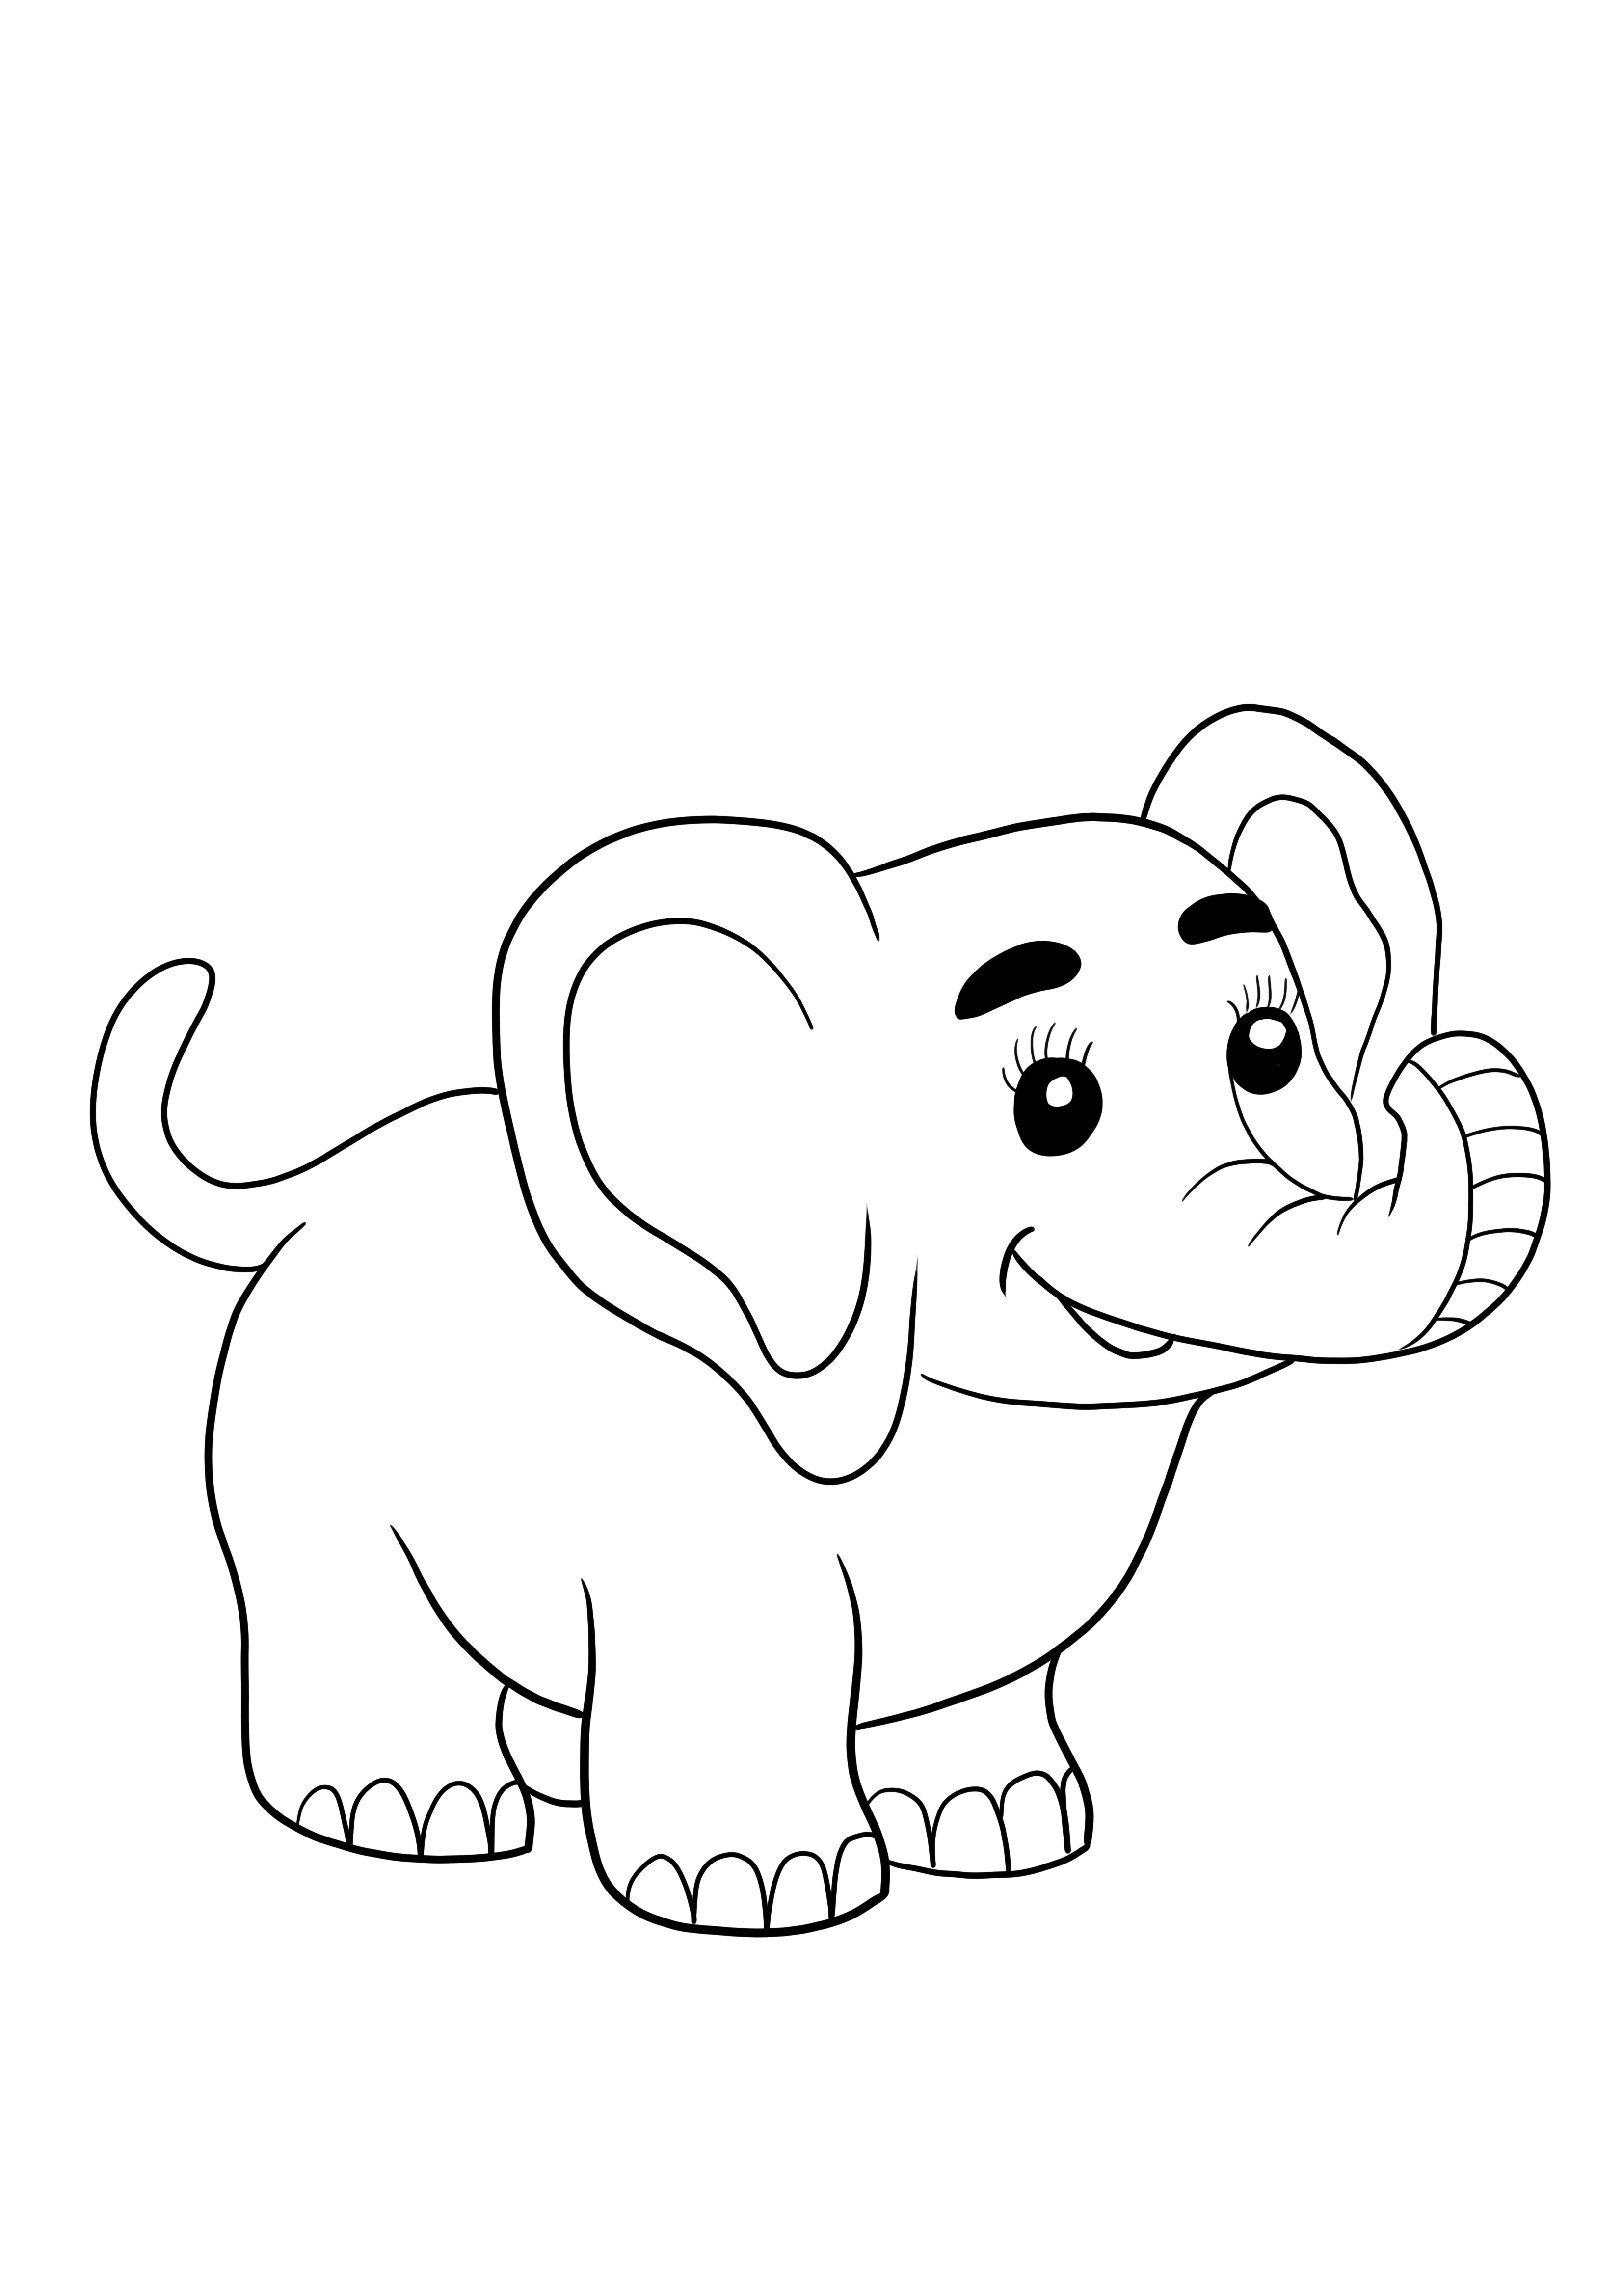 Joli bébé éléphant gratuit à imprimer et à colorier pour les enfants de tous âges